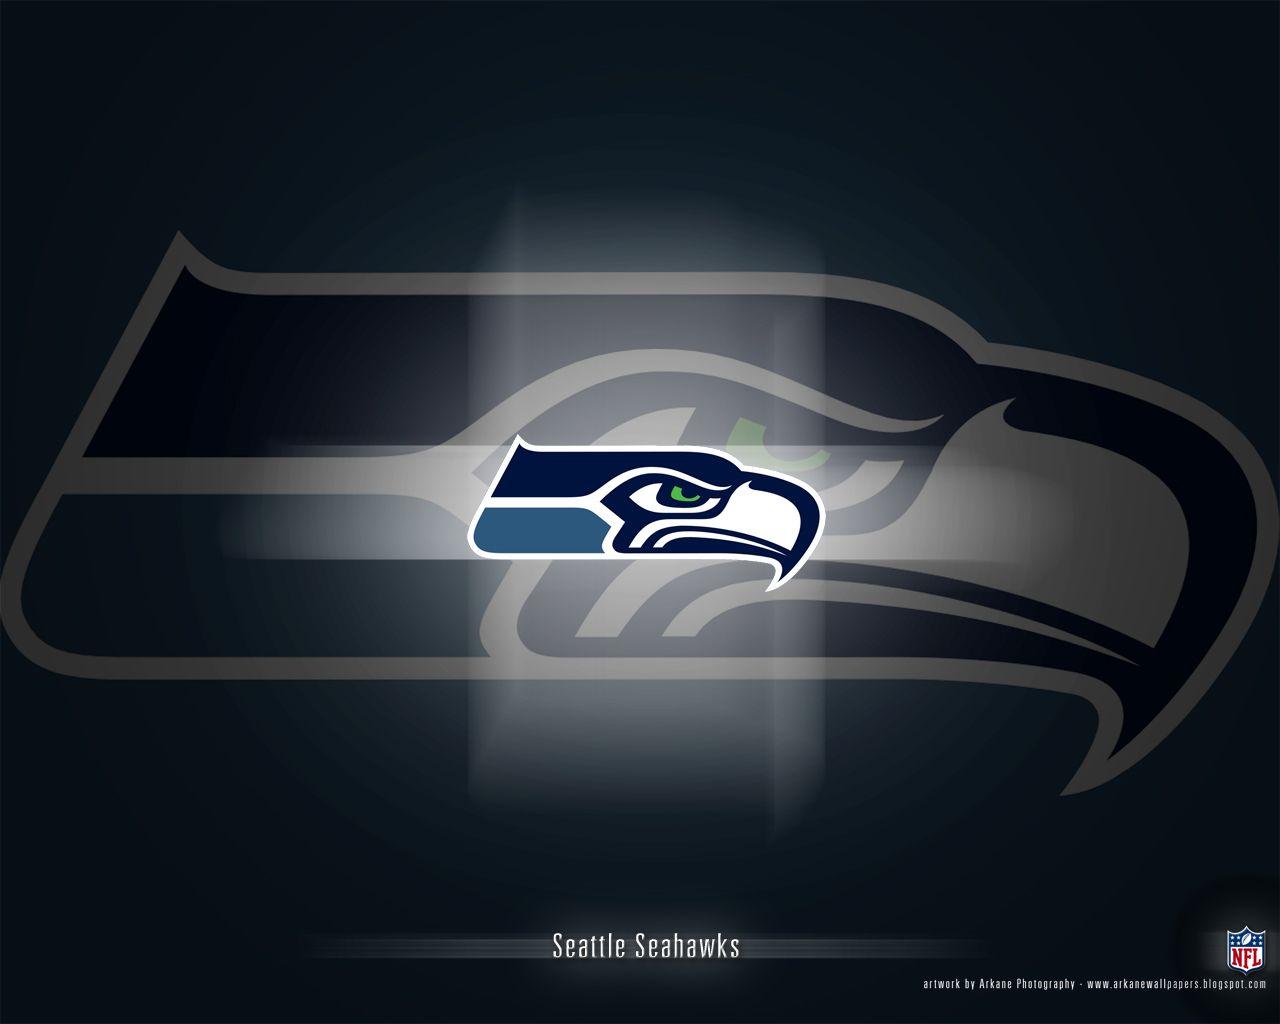 seahawks image. Arkane NFL Wallpaper: Seattle Seahawks